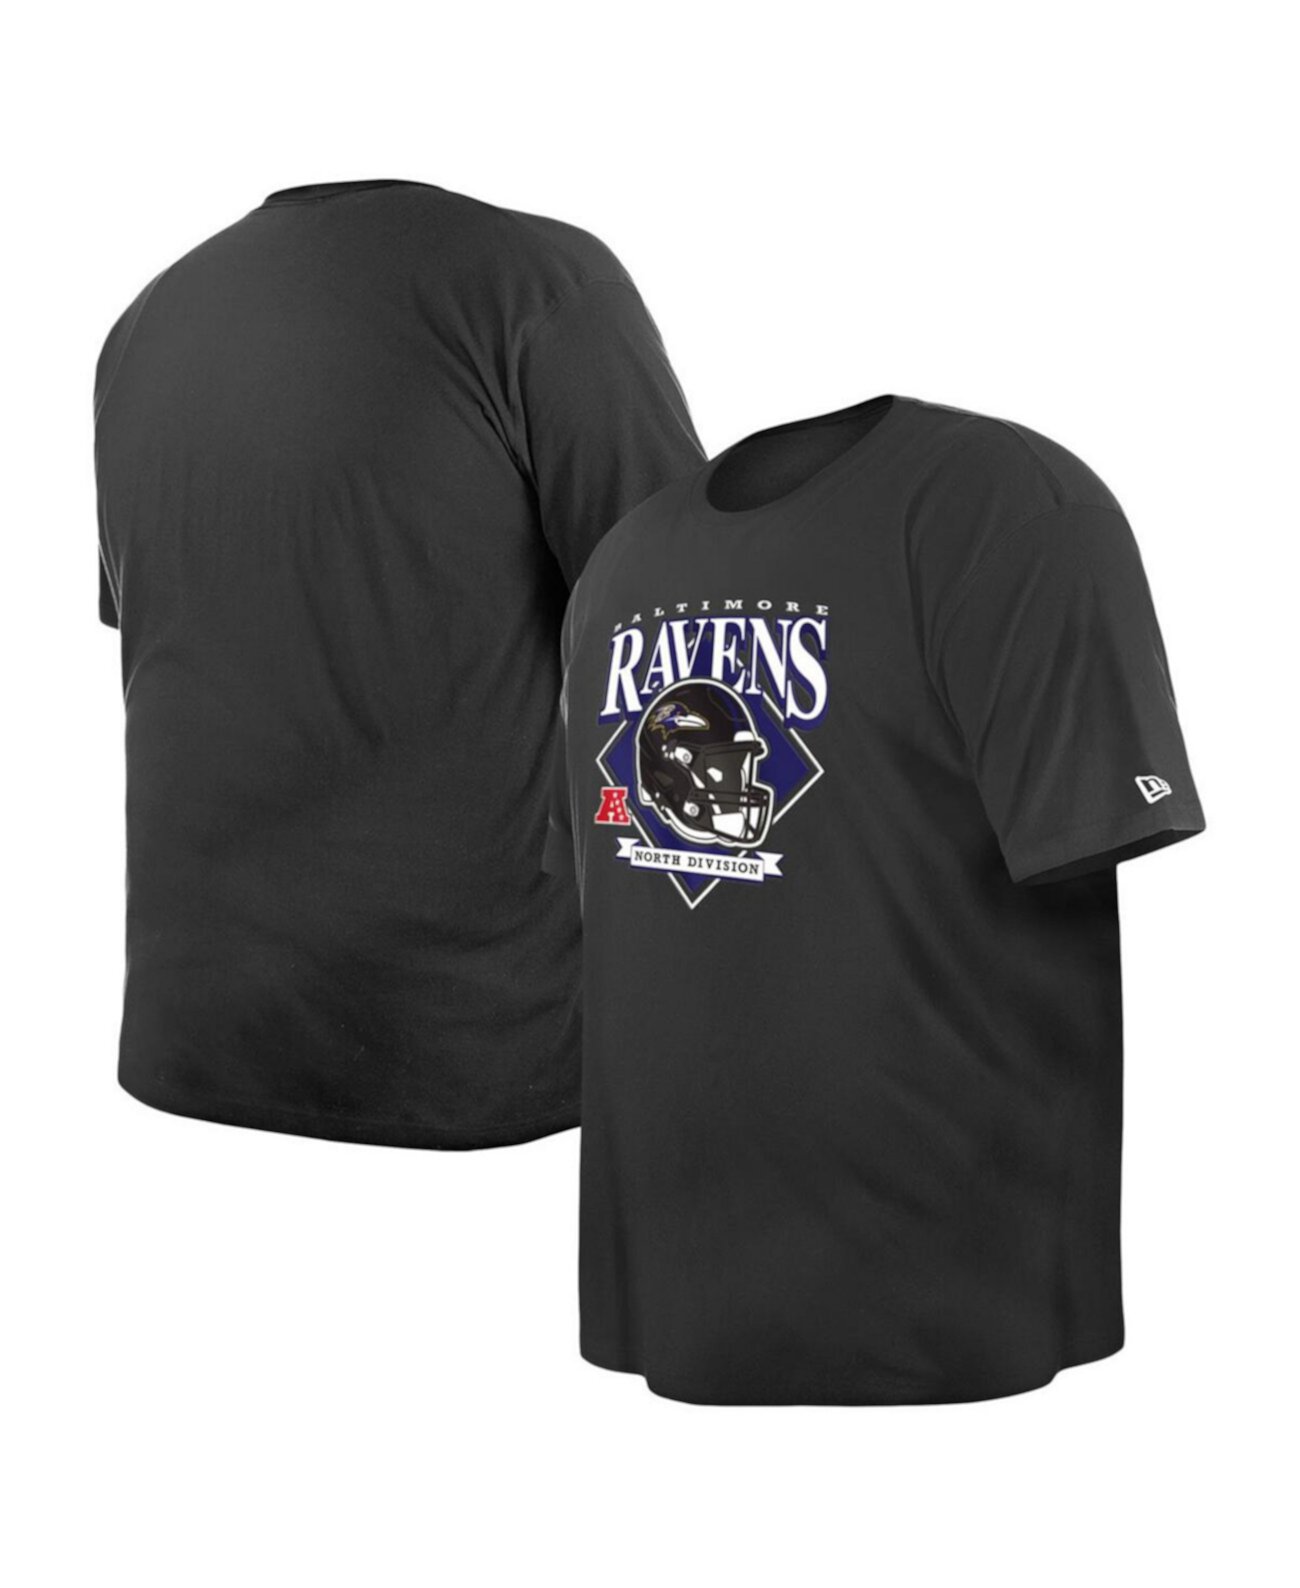 Мужская черная футболка Baltimore Ravens Big and Tall Helmet New Era